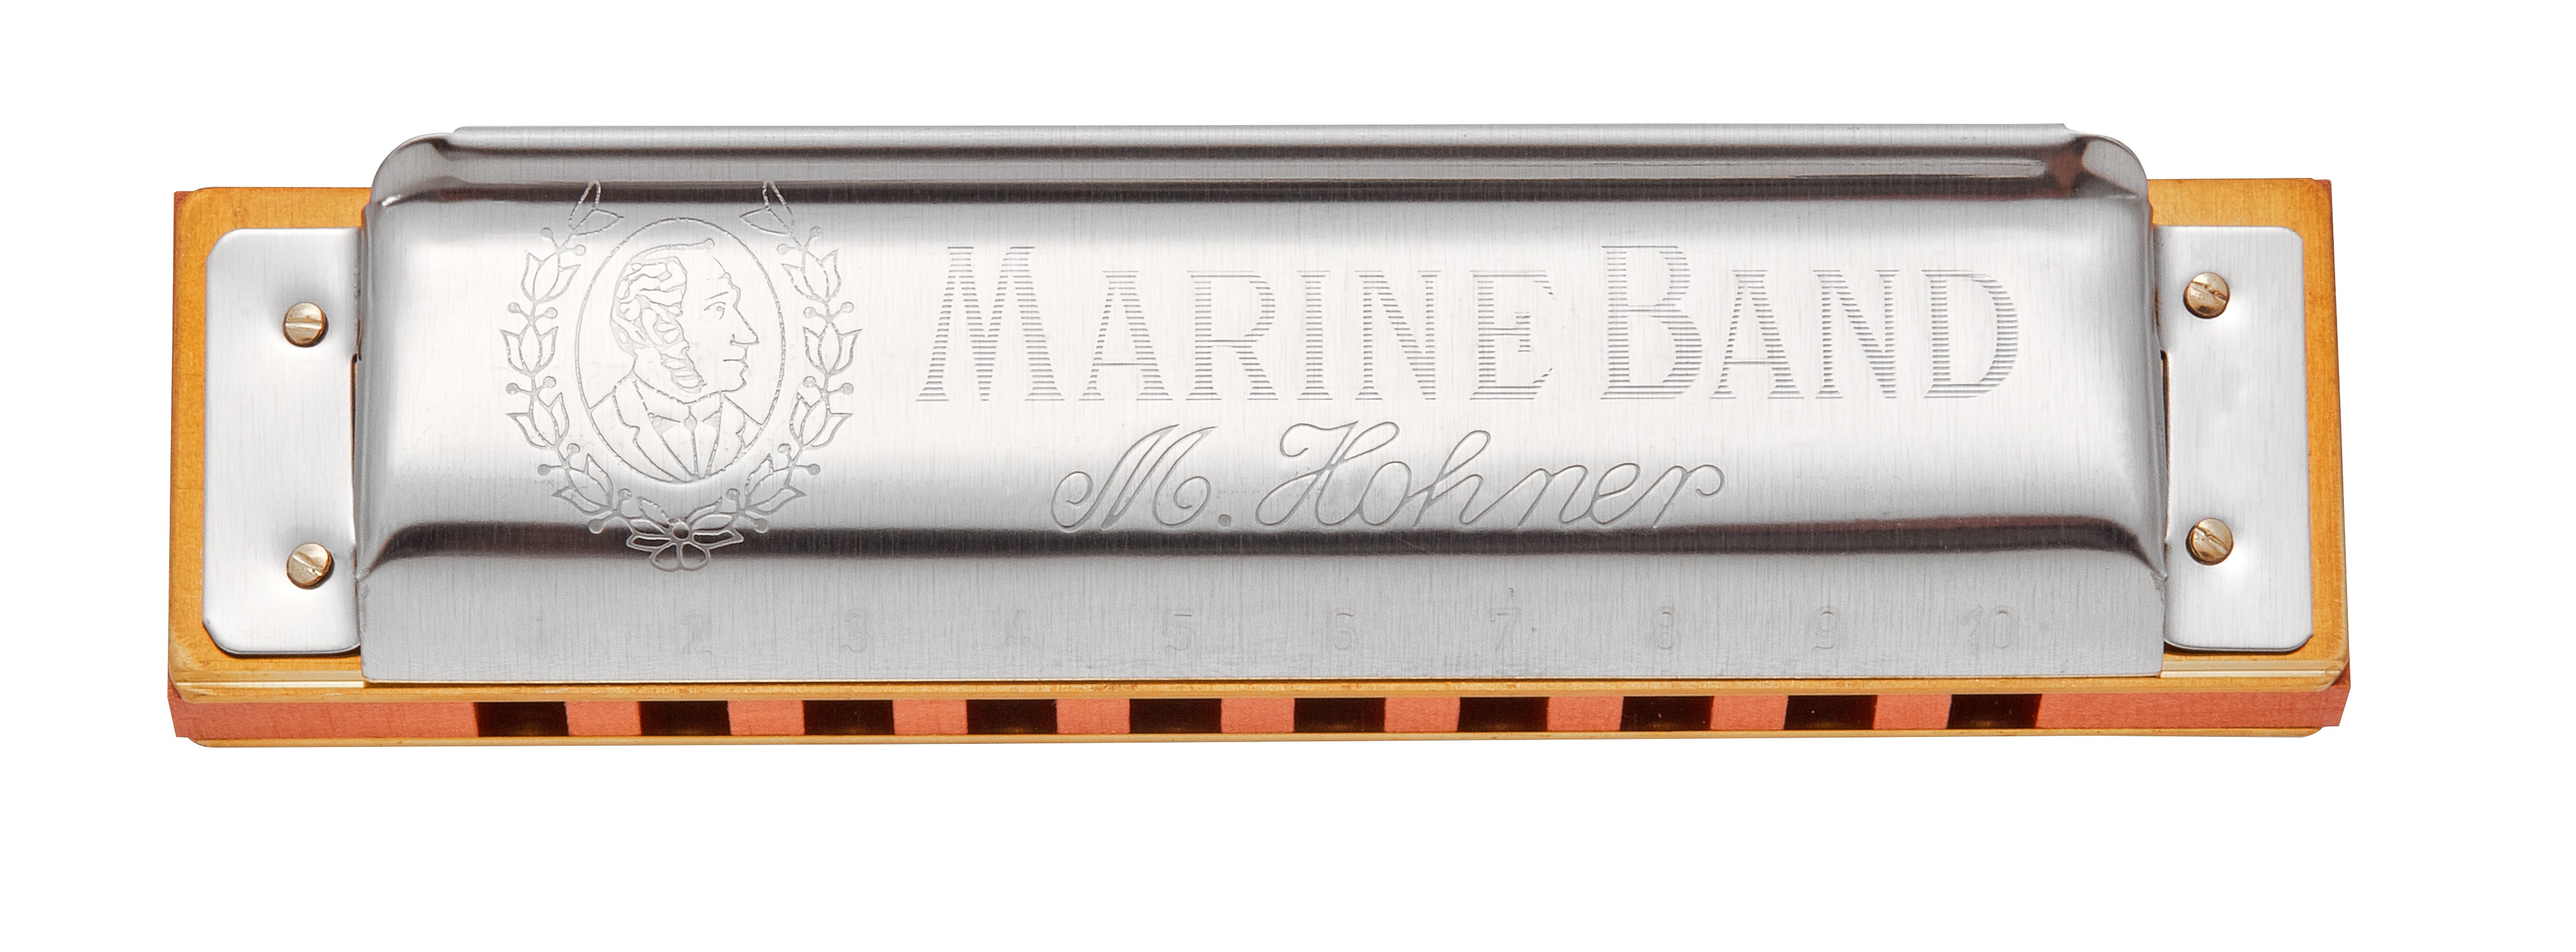 Fotografie Hohner Marine Band 1896 D-major